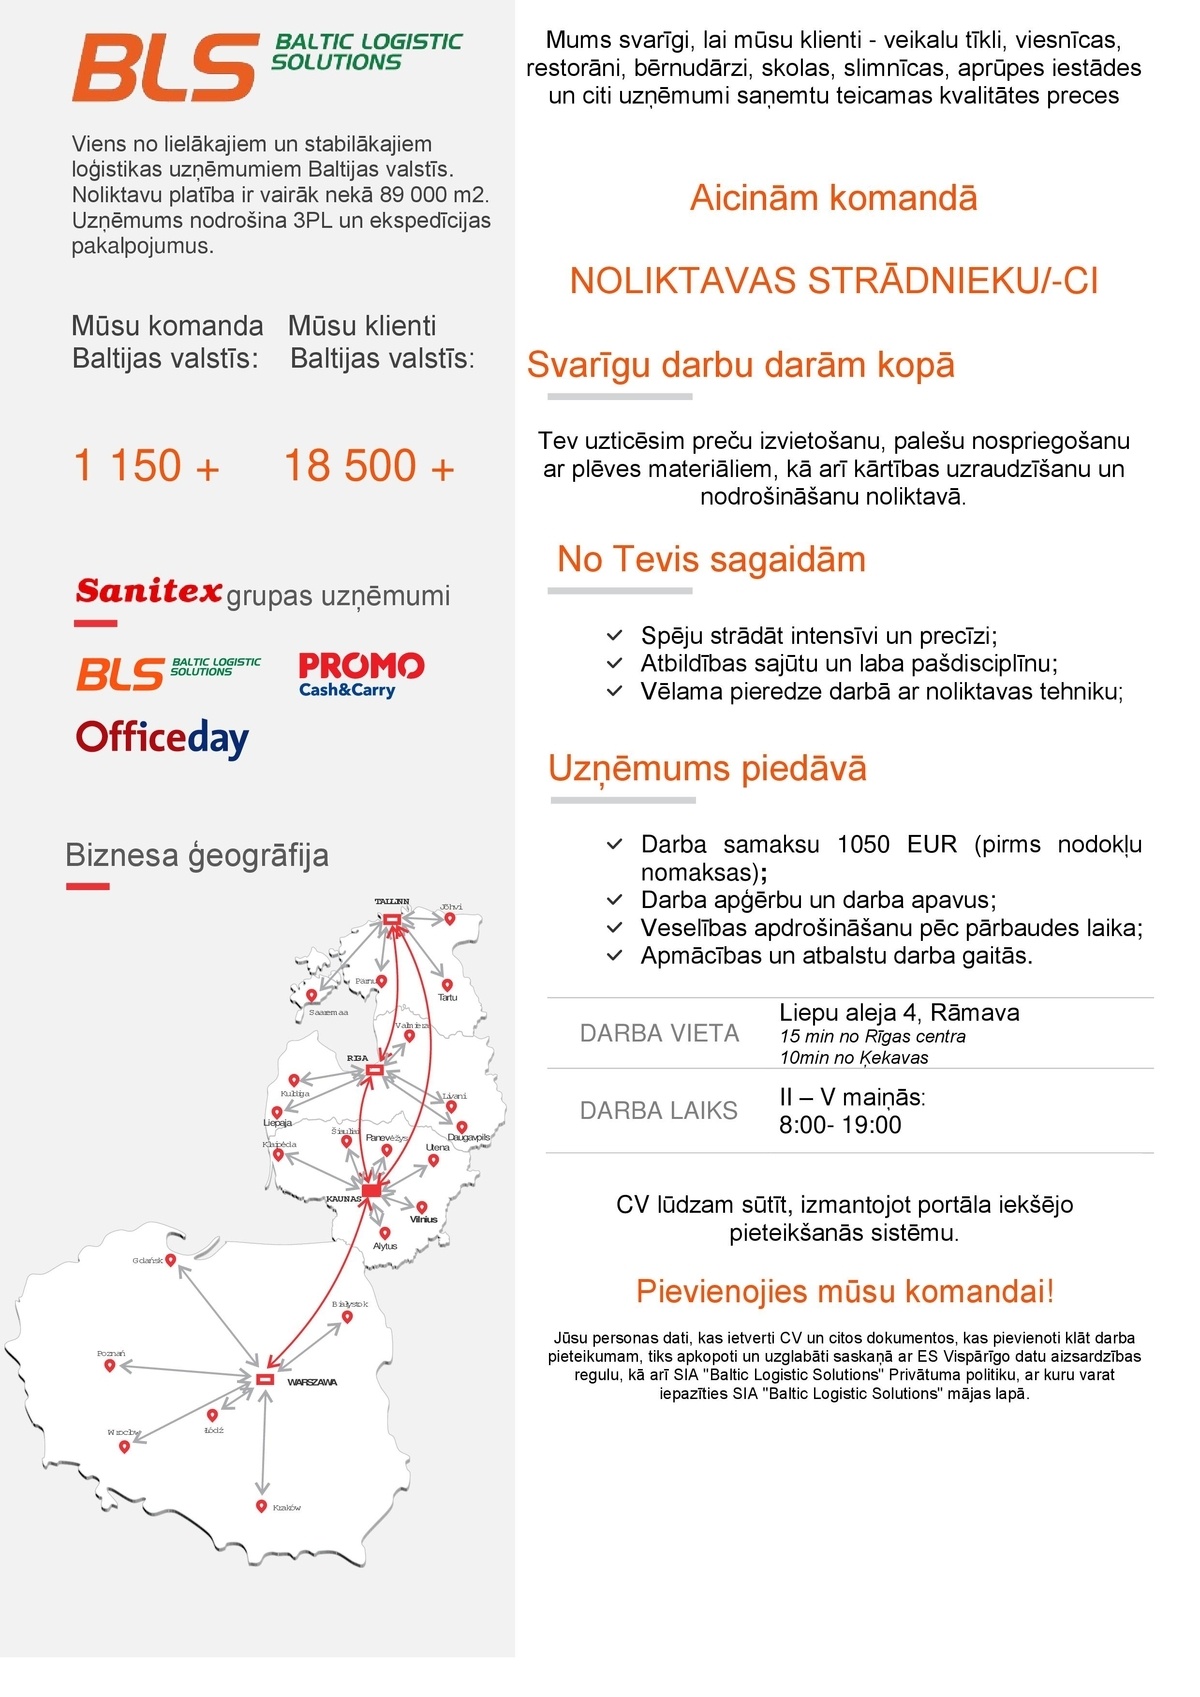 Baltic Logistic Solutions, SIA Noliktavas strādnieks/-ce